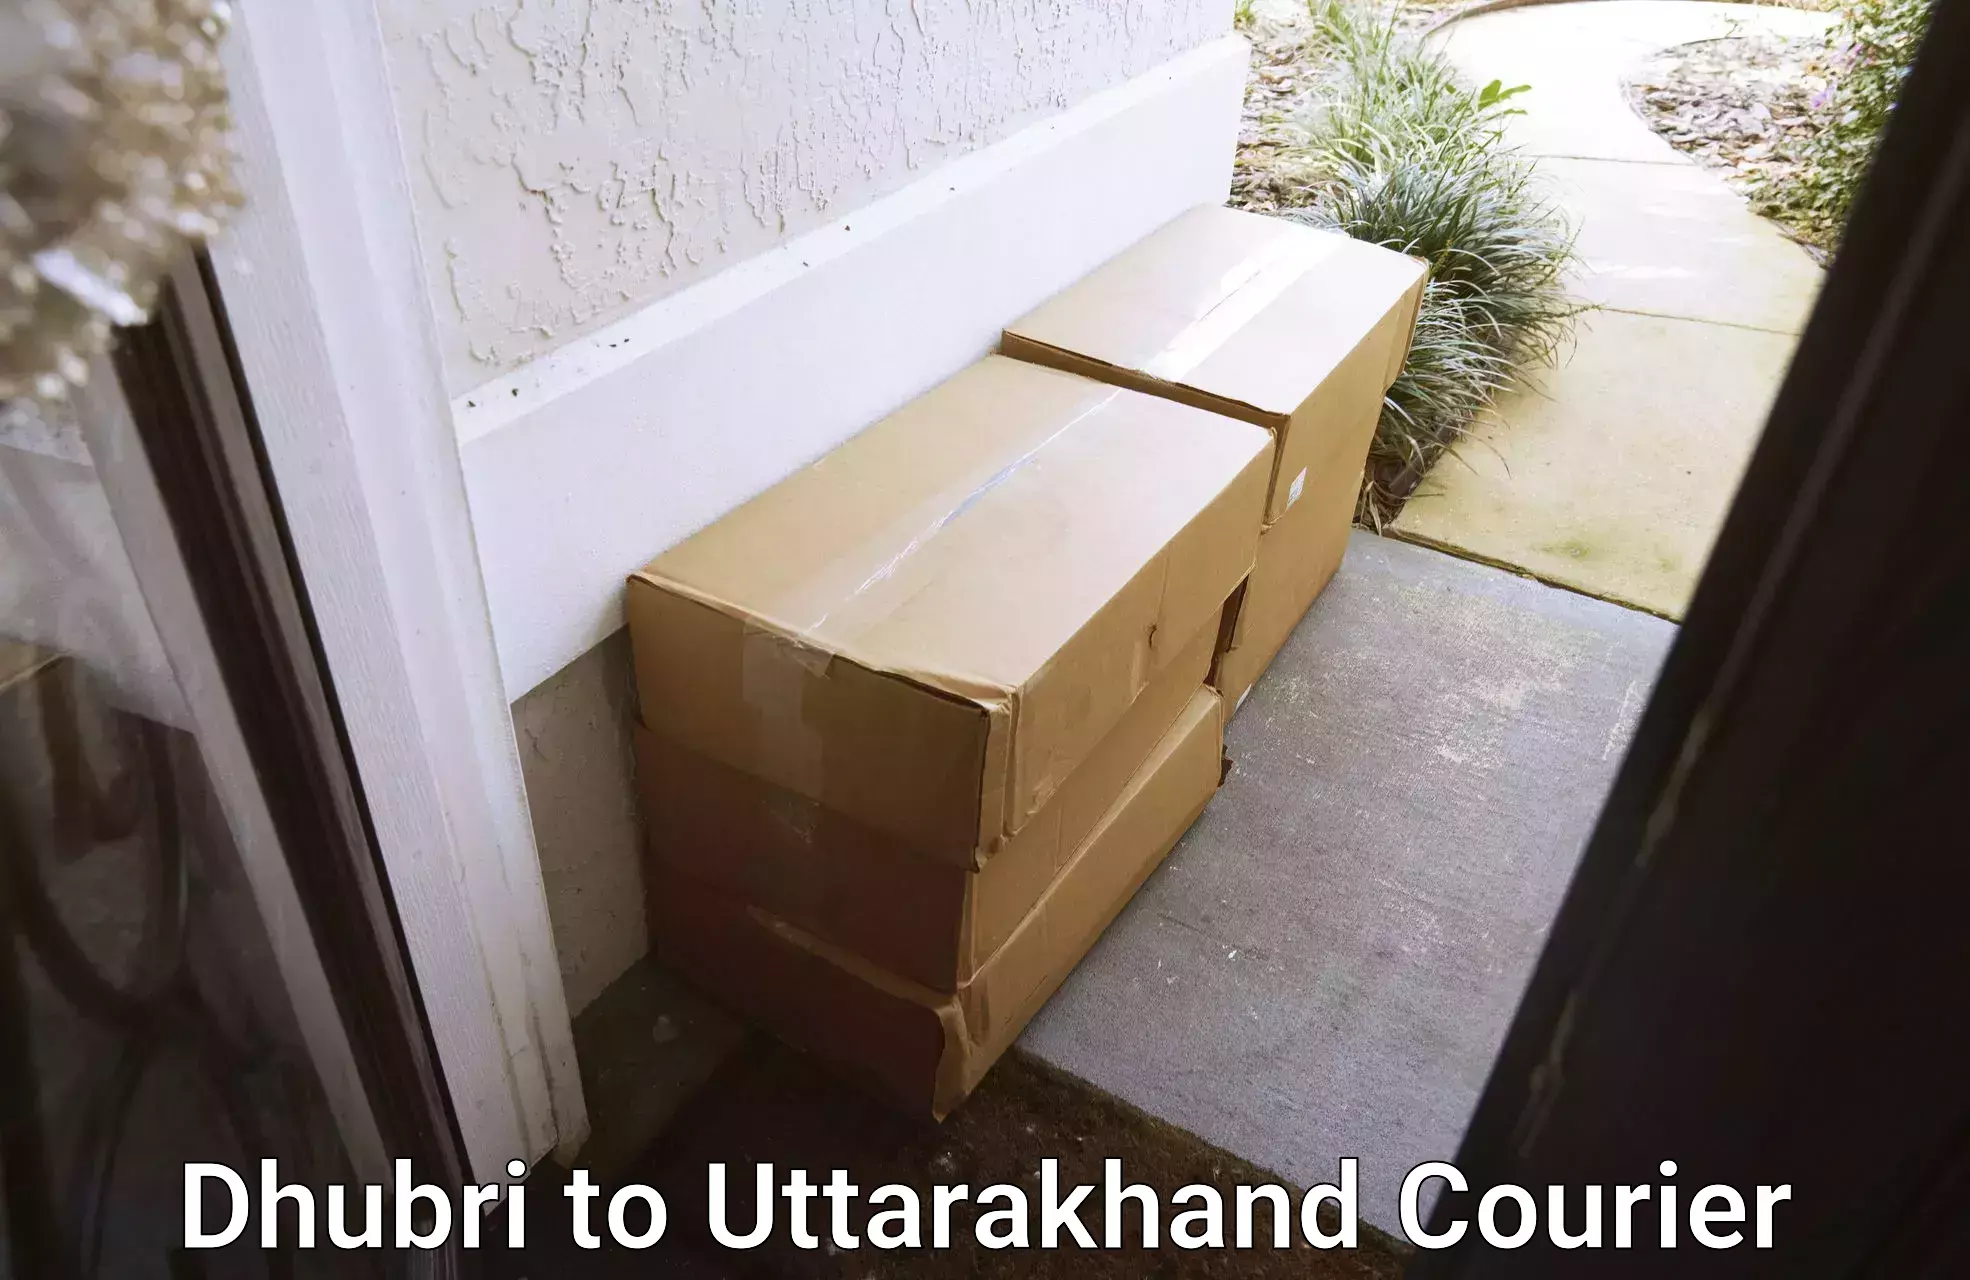 Customized shipping options Dhubri to Paithani